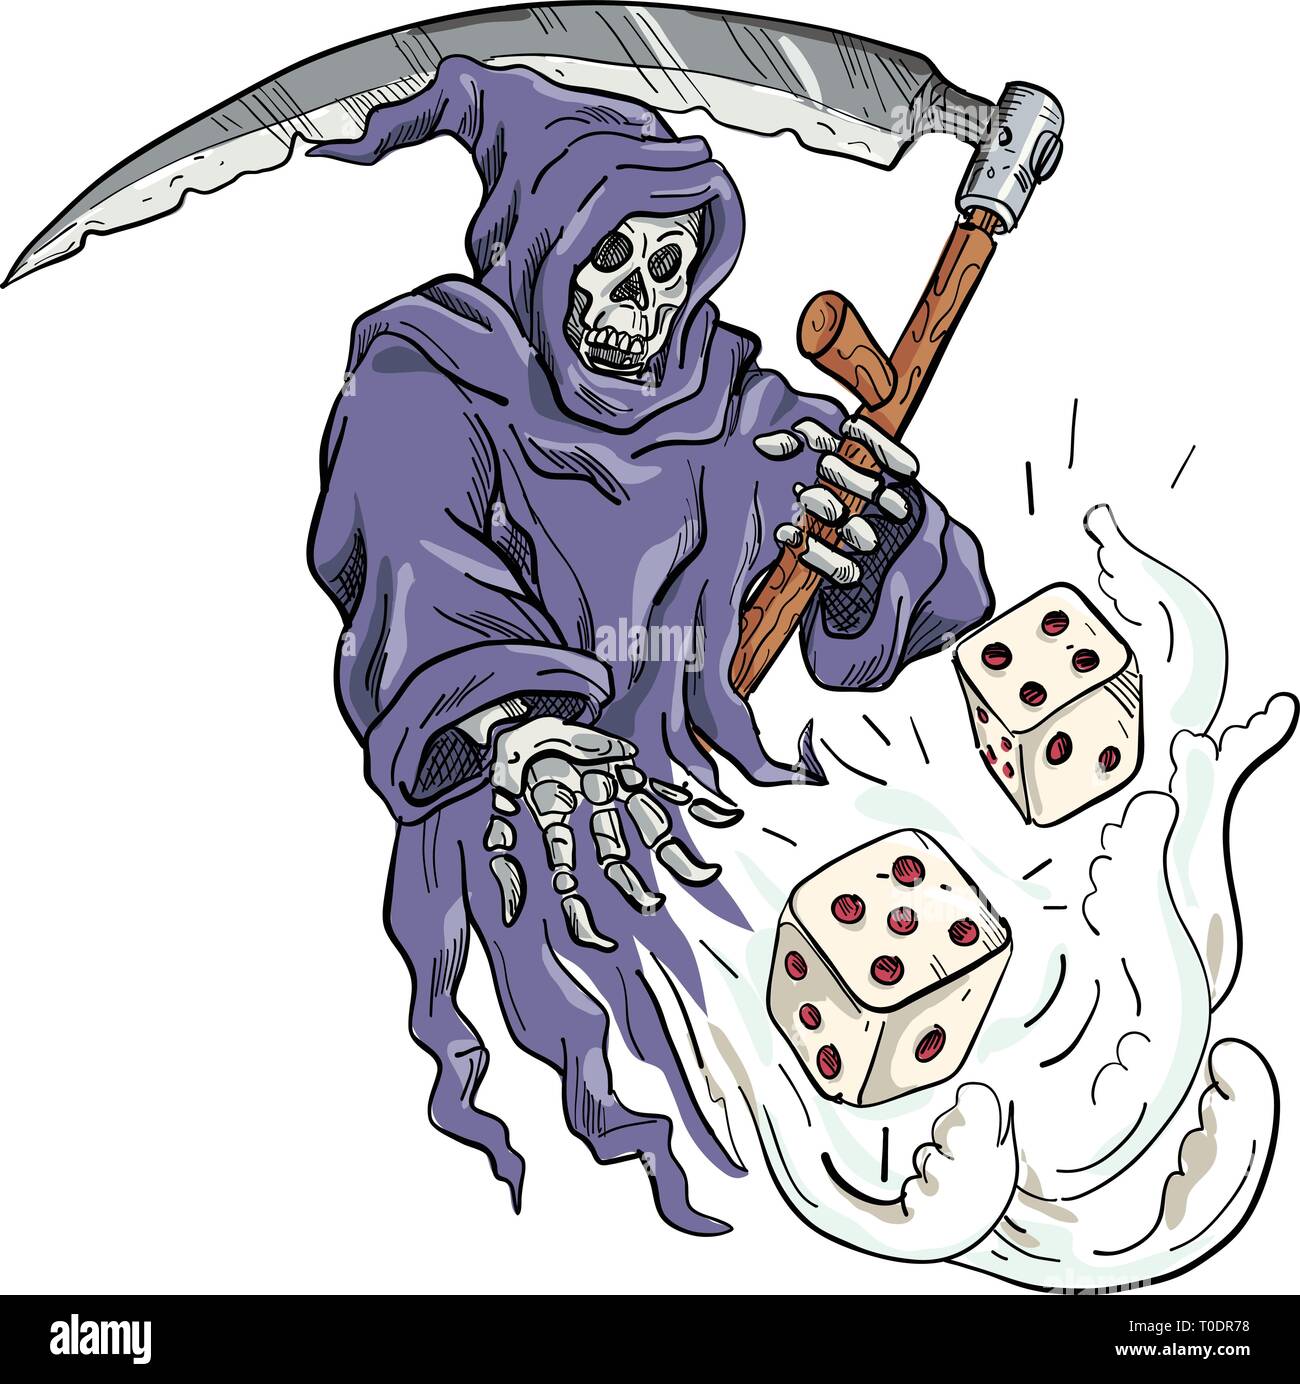 Disegno stile sketch illustrazione della personificazione della morte, Grim Reaper tenendo una falce di gettare e tirare i dadi sul bianco isolato ba Illustrazione Vettoriale